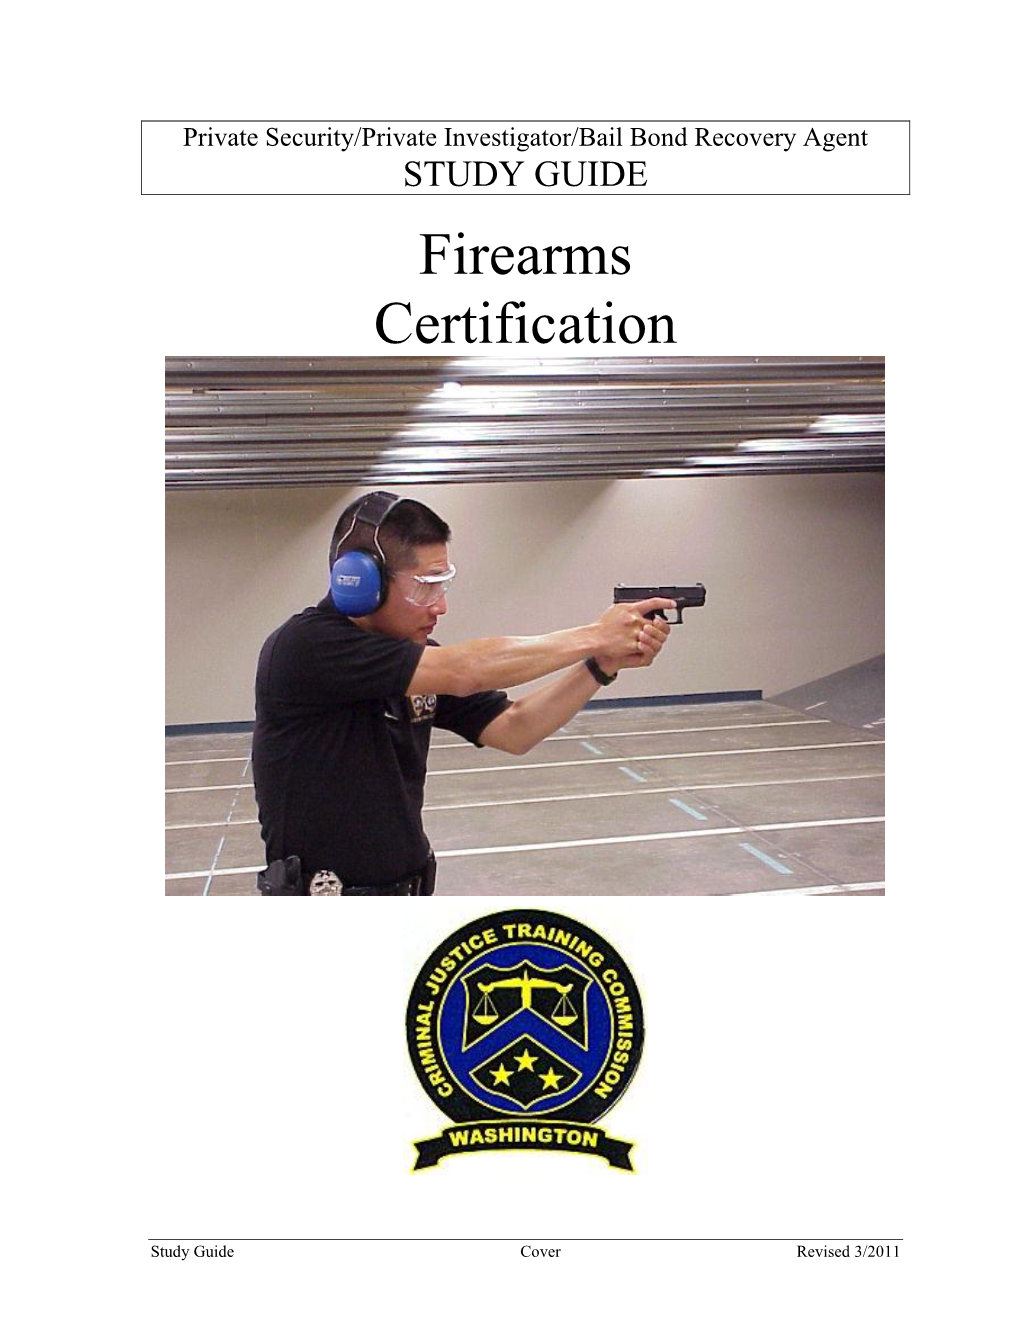 Firearm Certification Study Guide